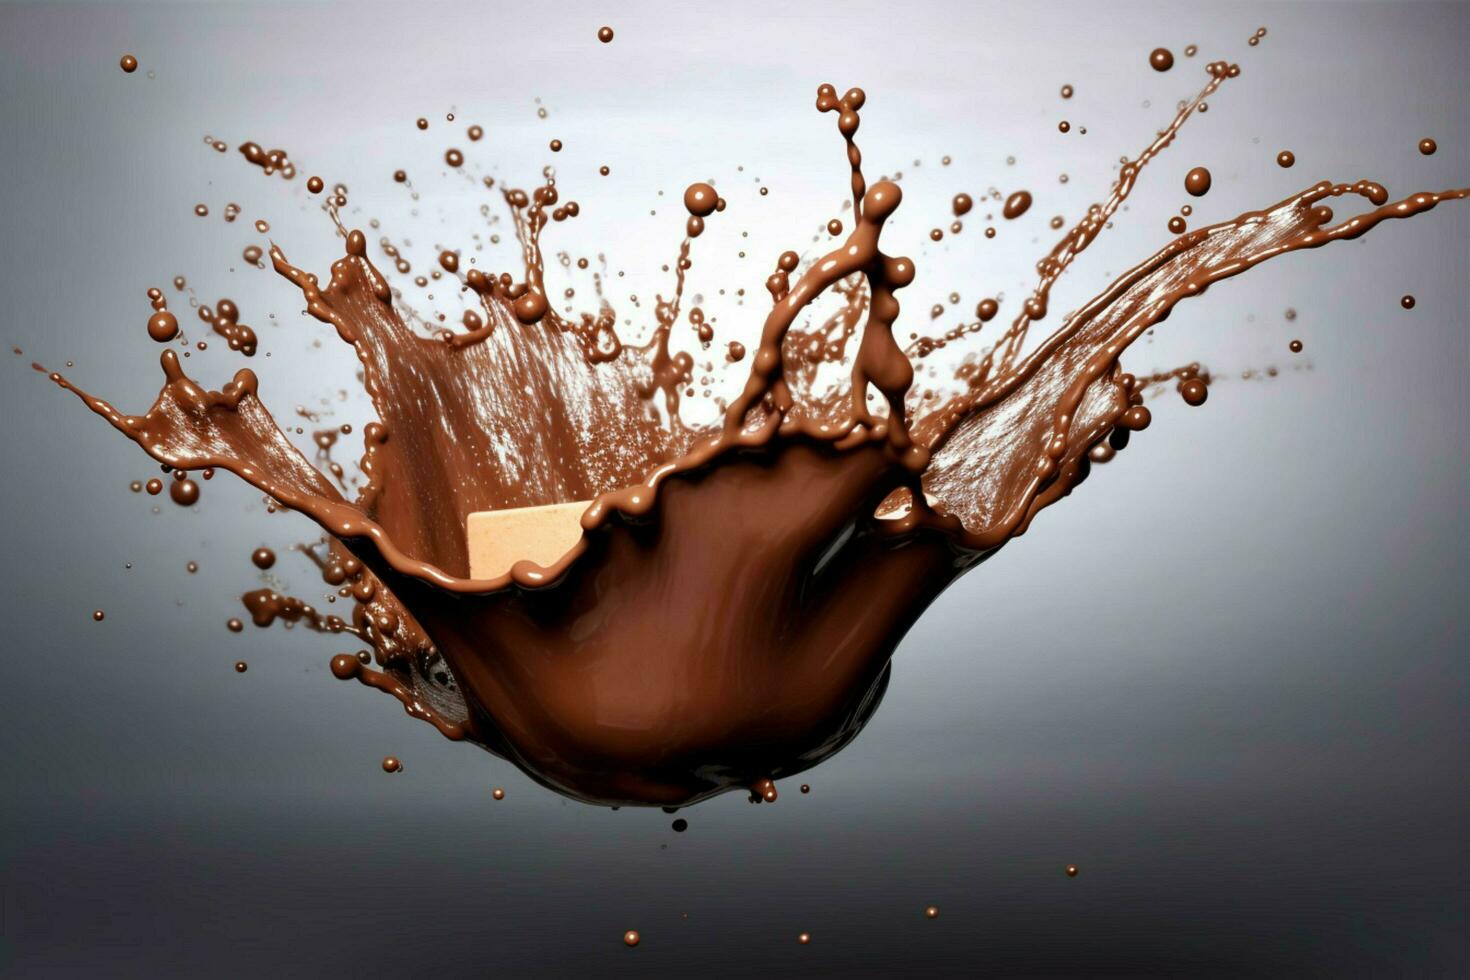 cacao cioccolato spruzzo foto